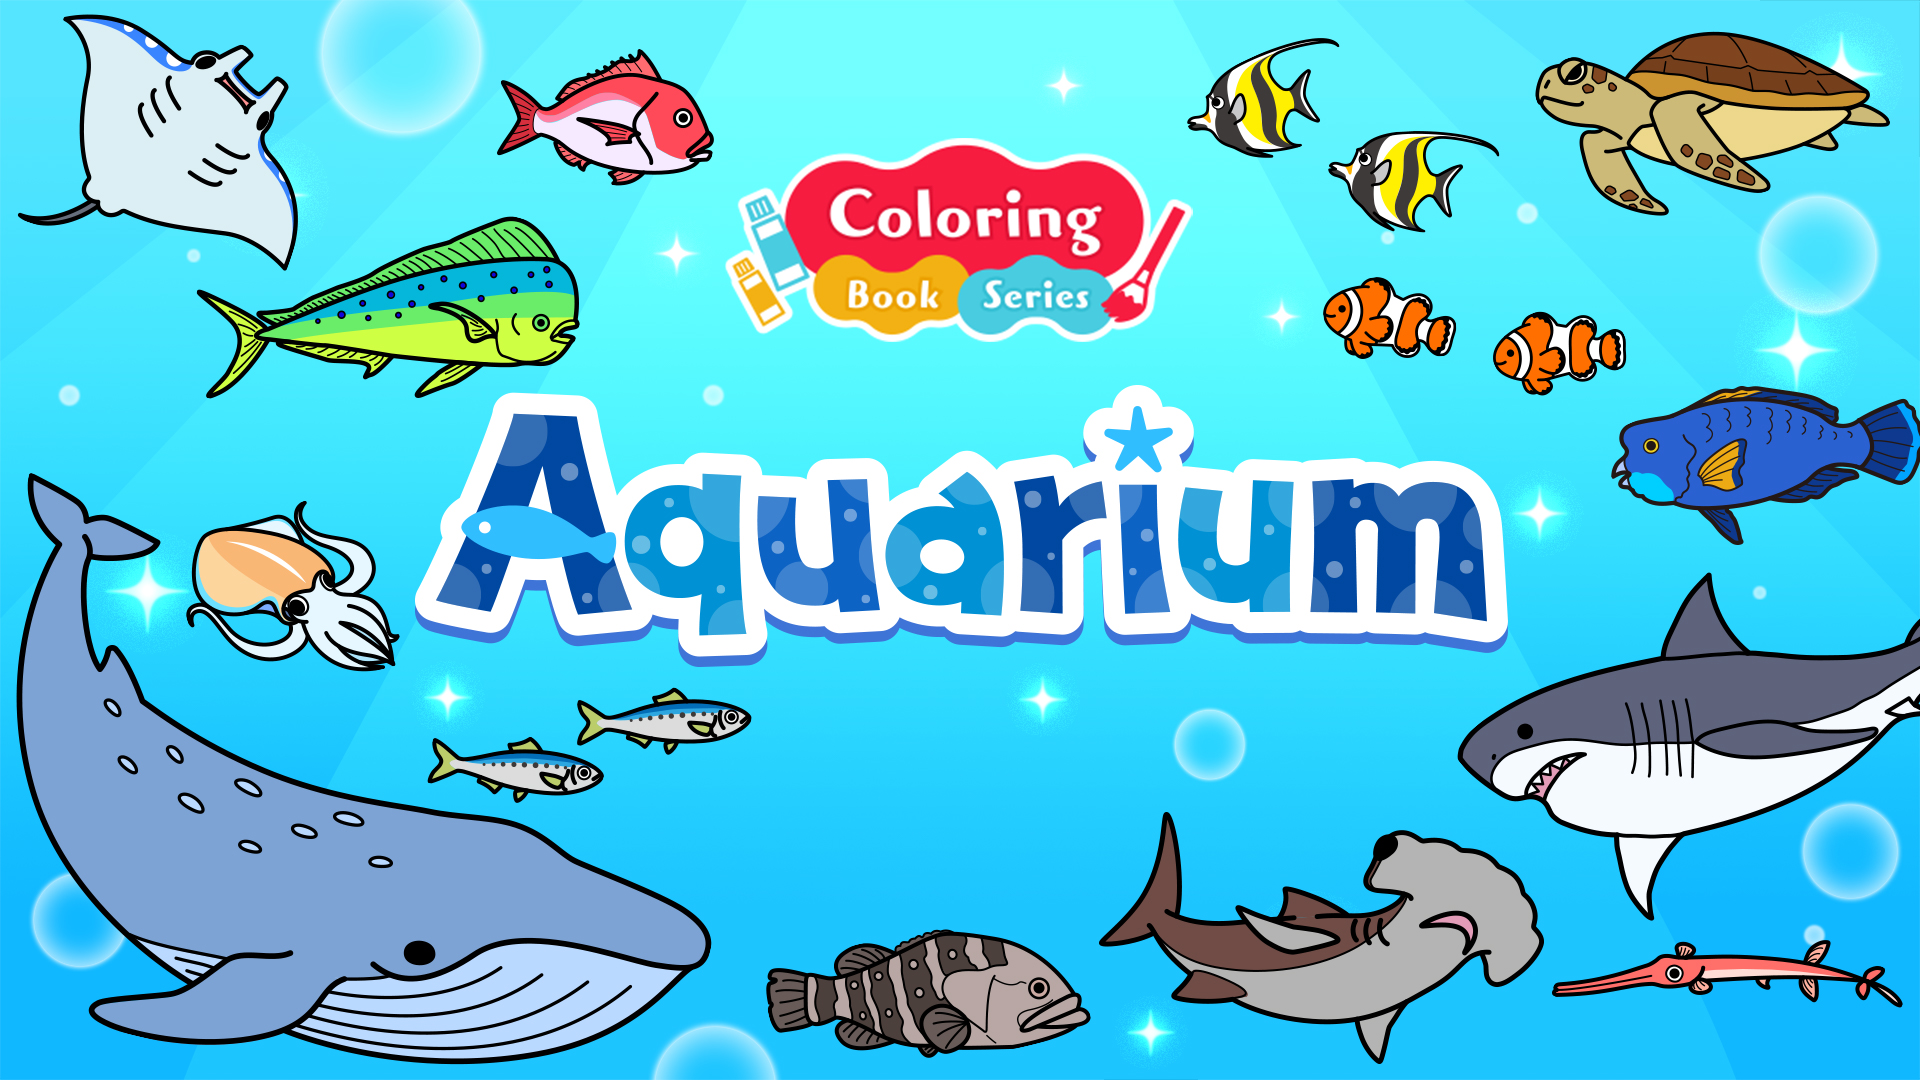 Coloring book series Aquarium